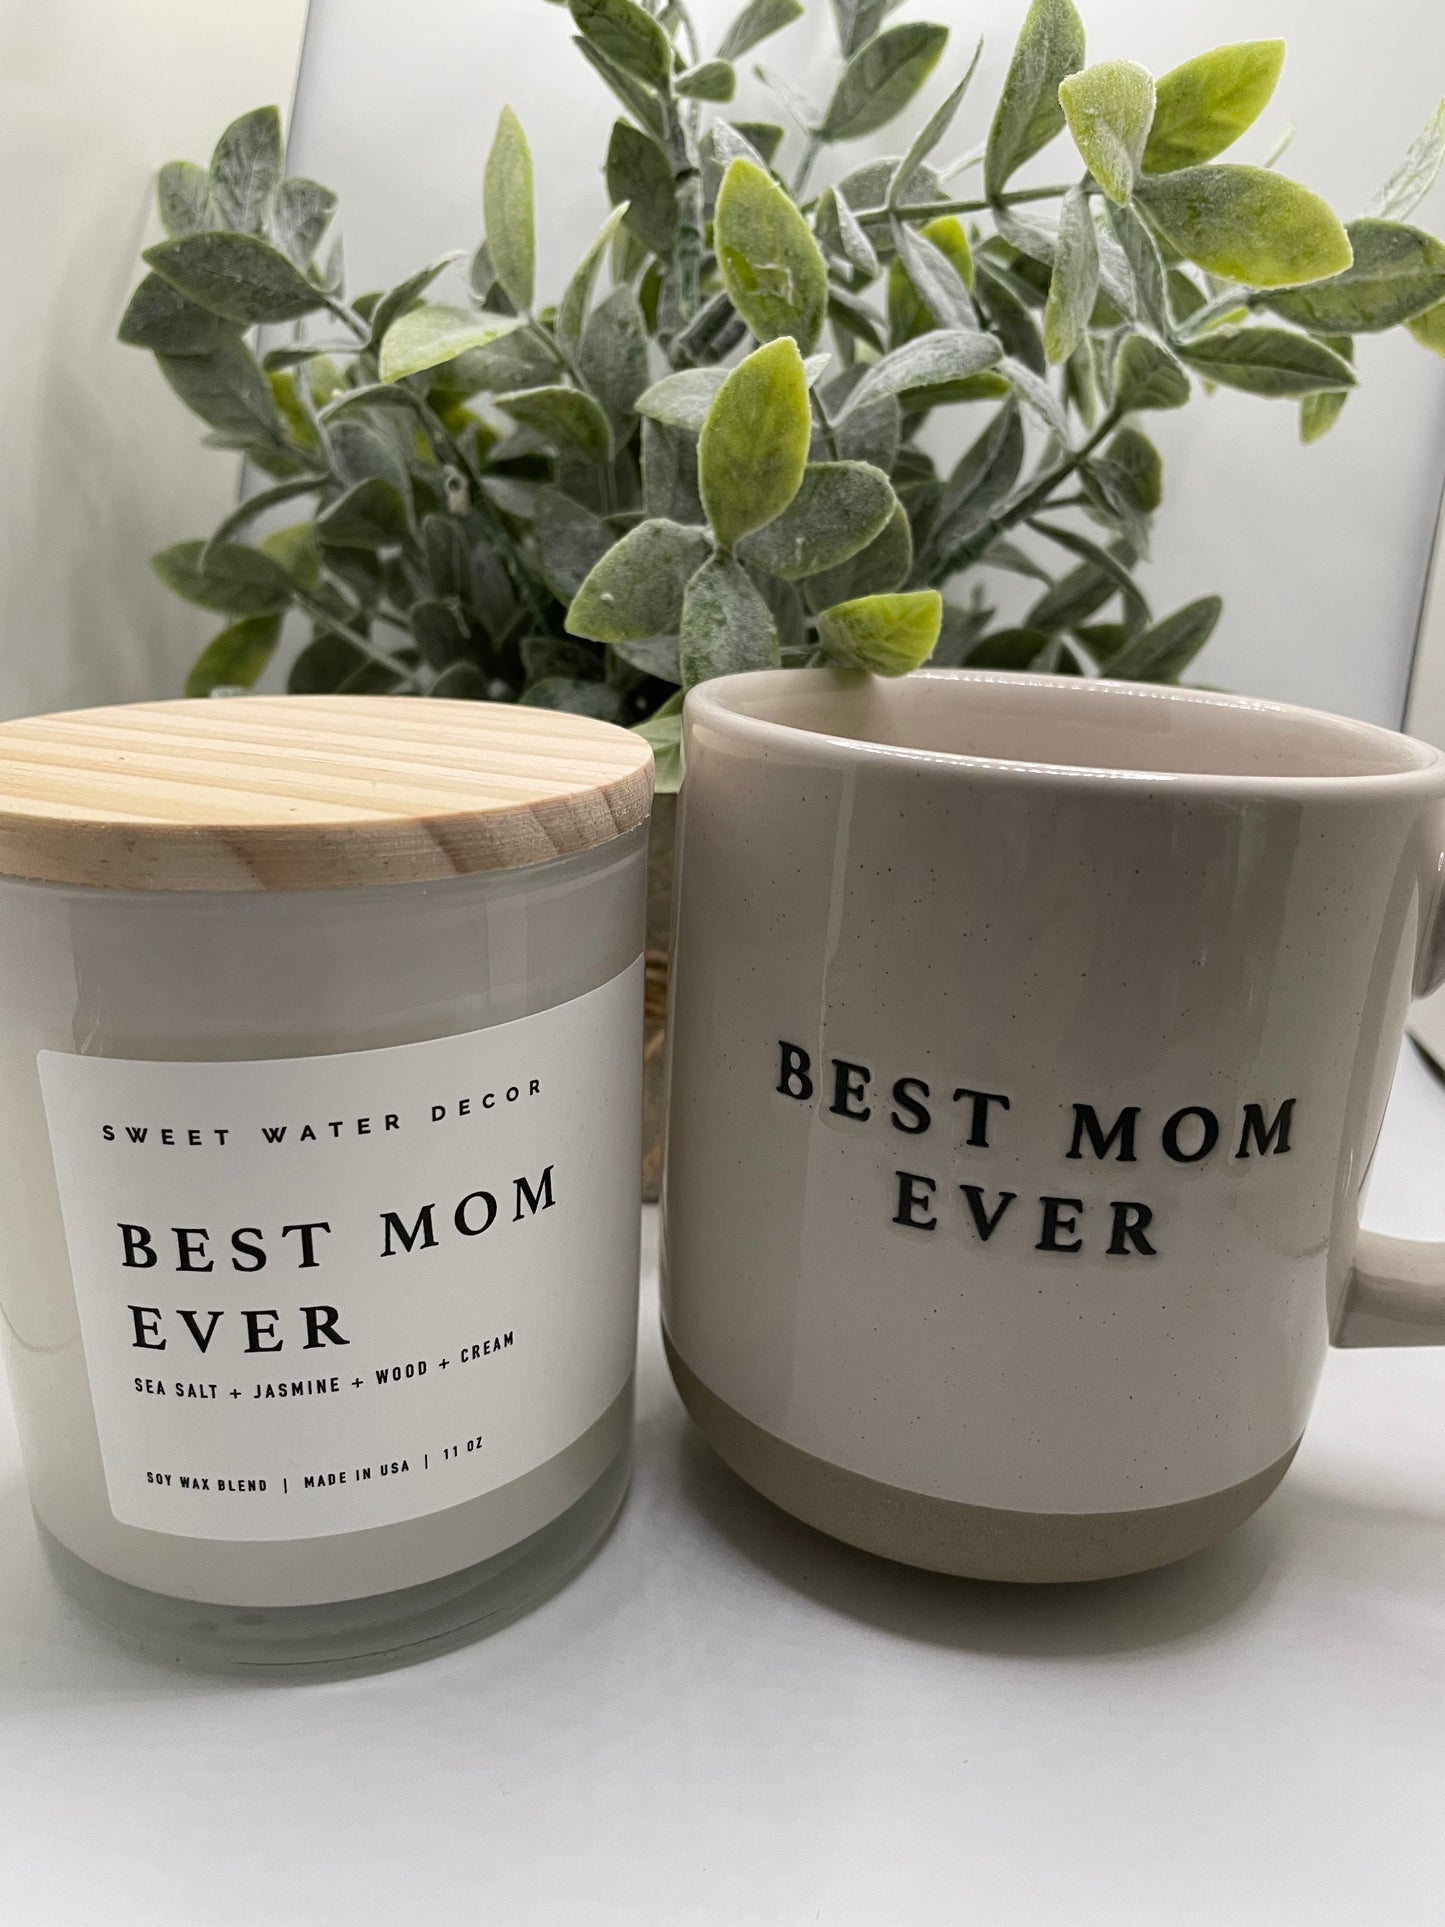 Best Mom Ever - Cream Stoneware Coffee Mug - 14 oz